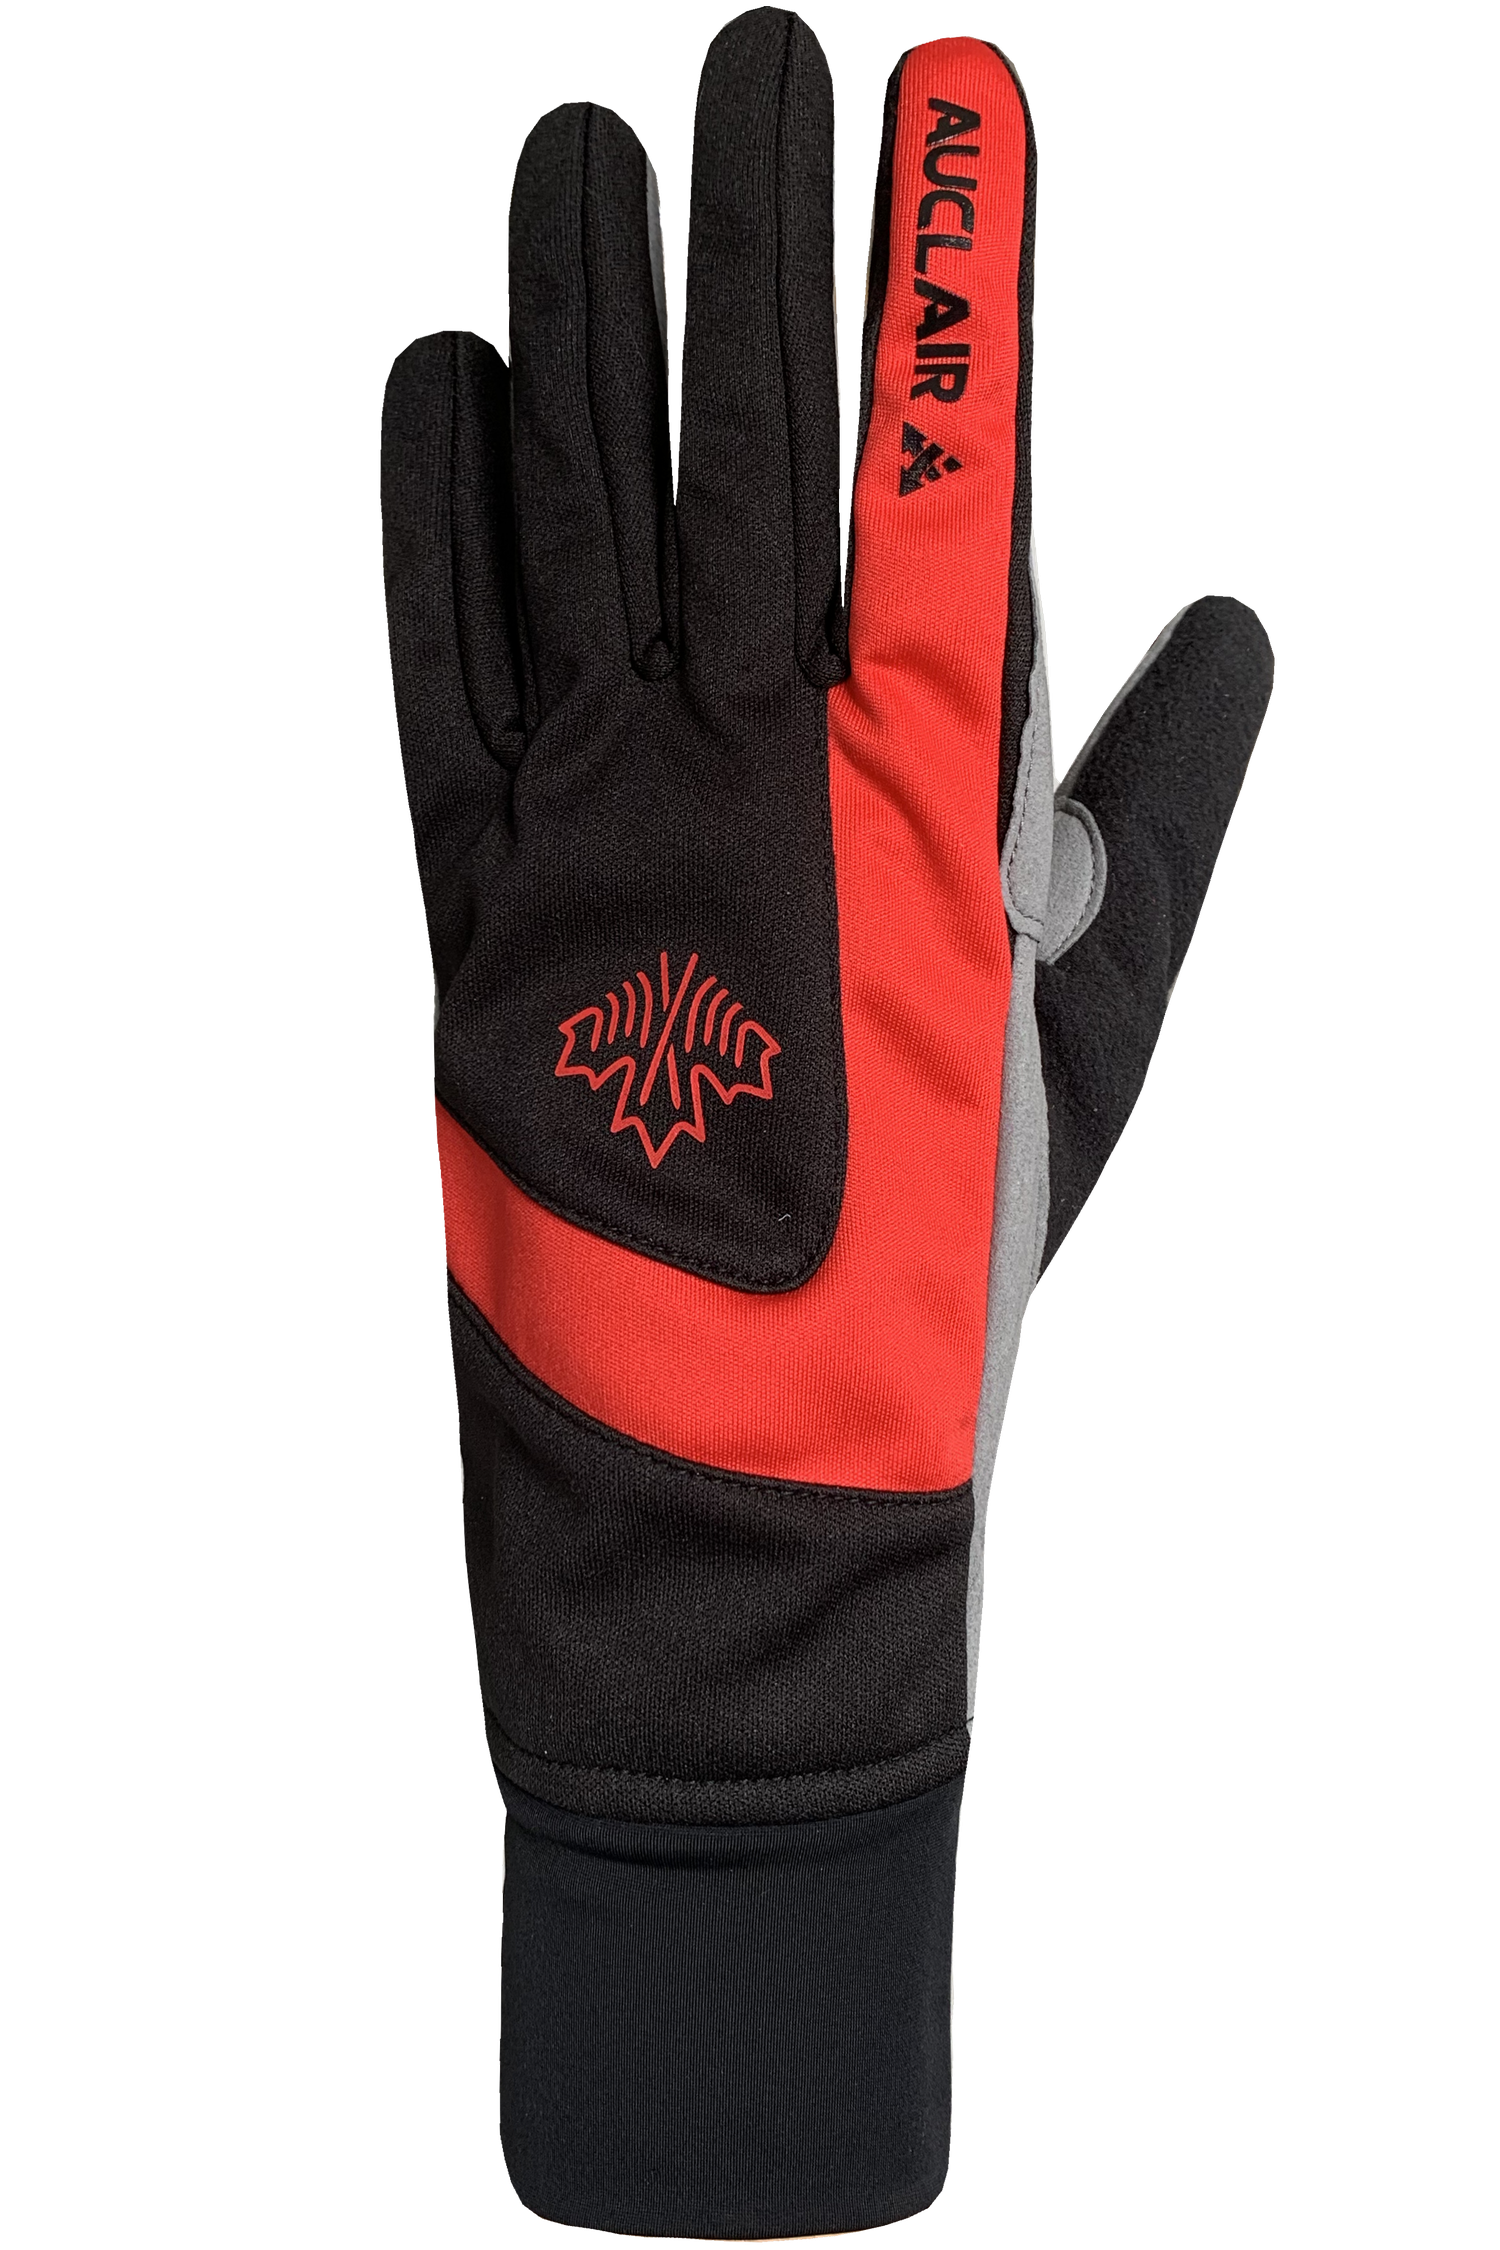 Cross Country Training Gloves - Women, Black/Red/White